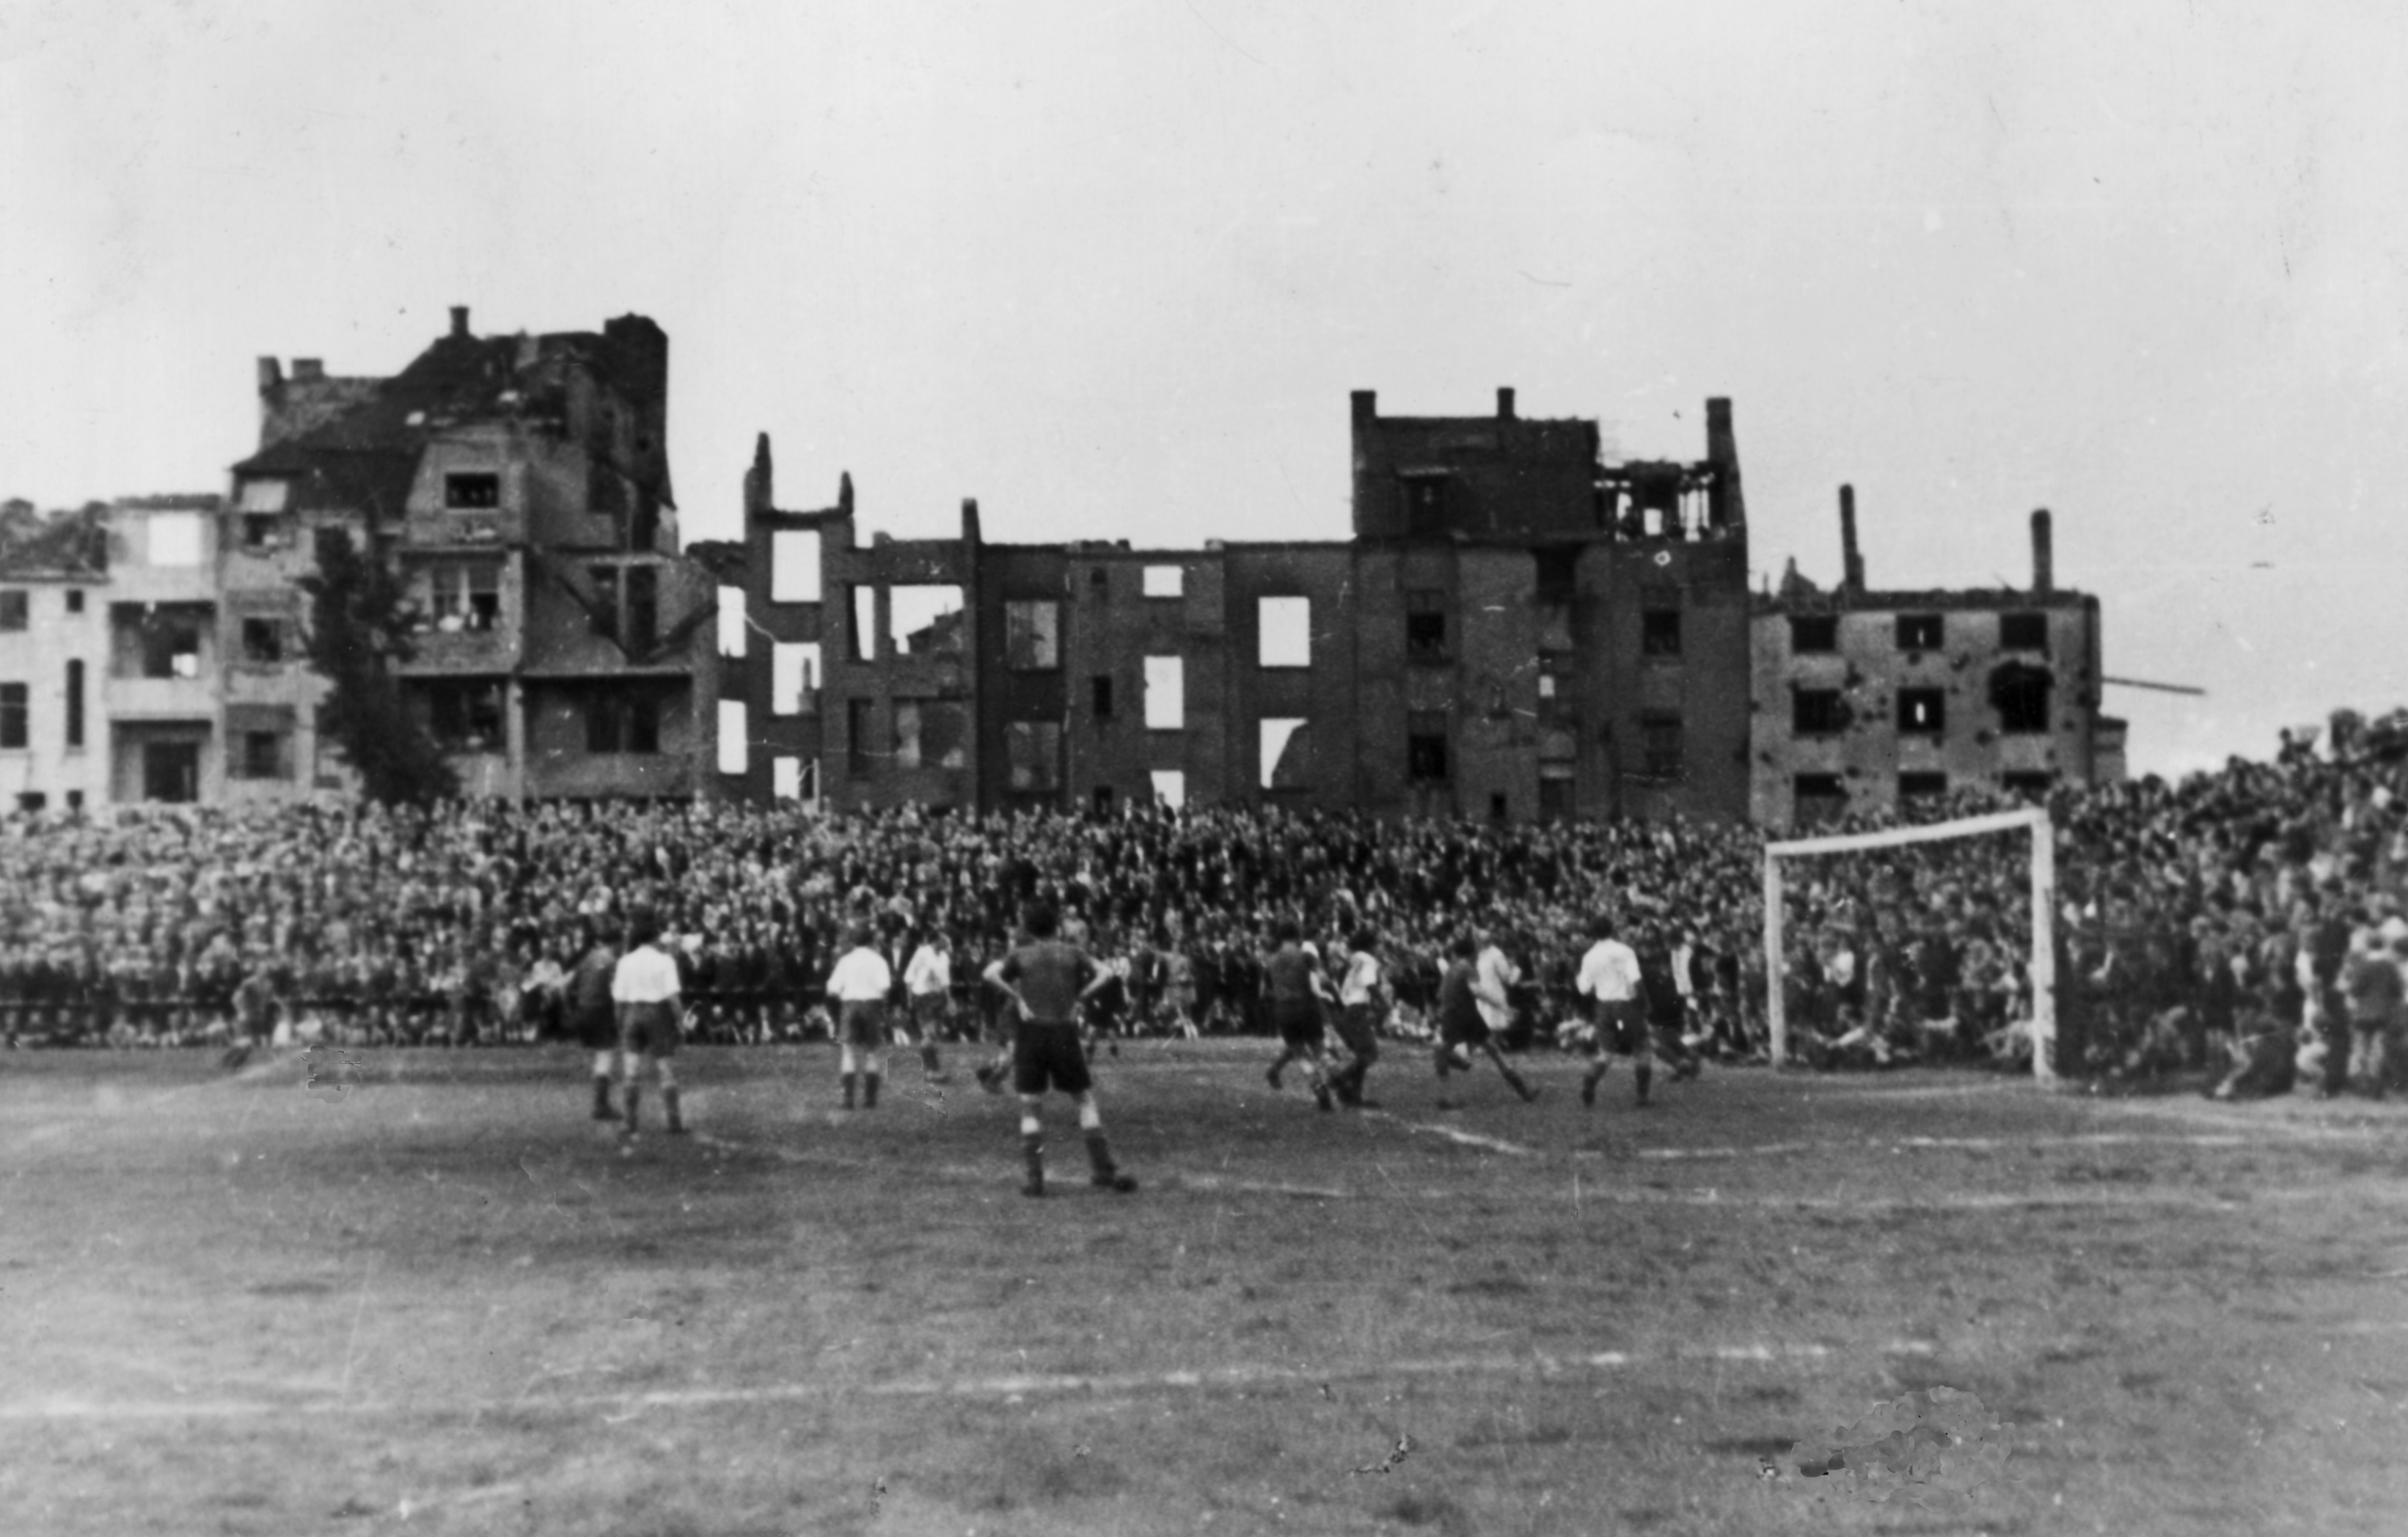 1 – Fußball zwischen Trümmern: Zuschauermassen in Essen 1946 